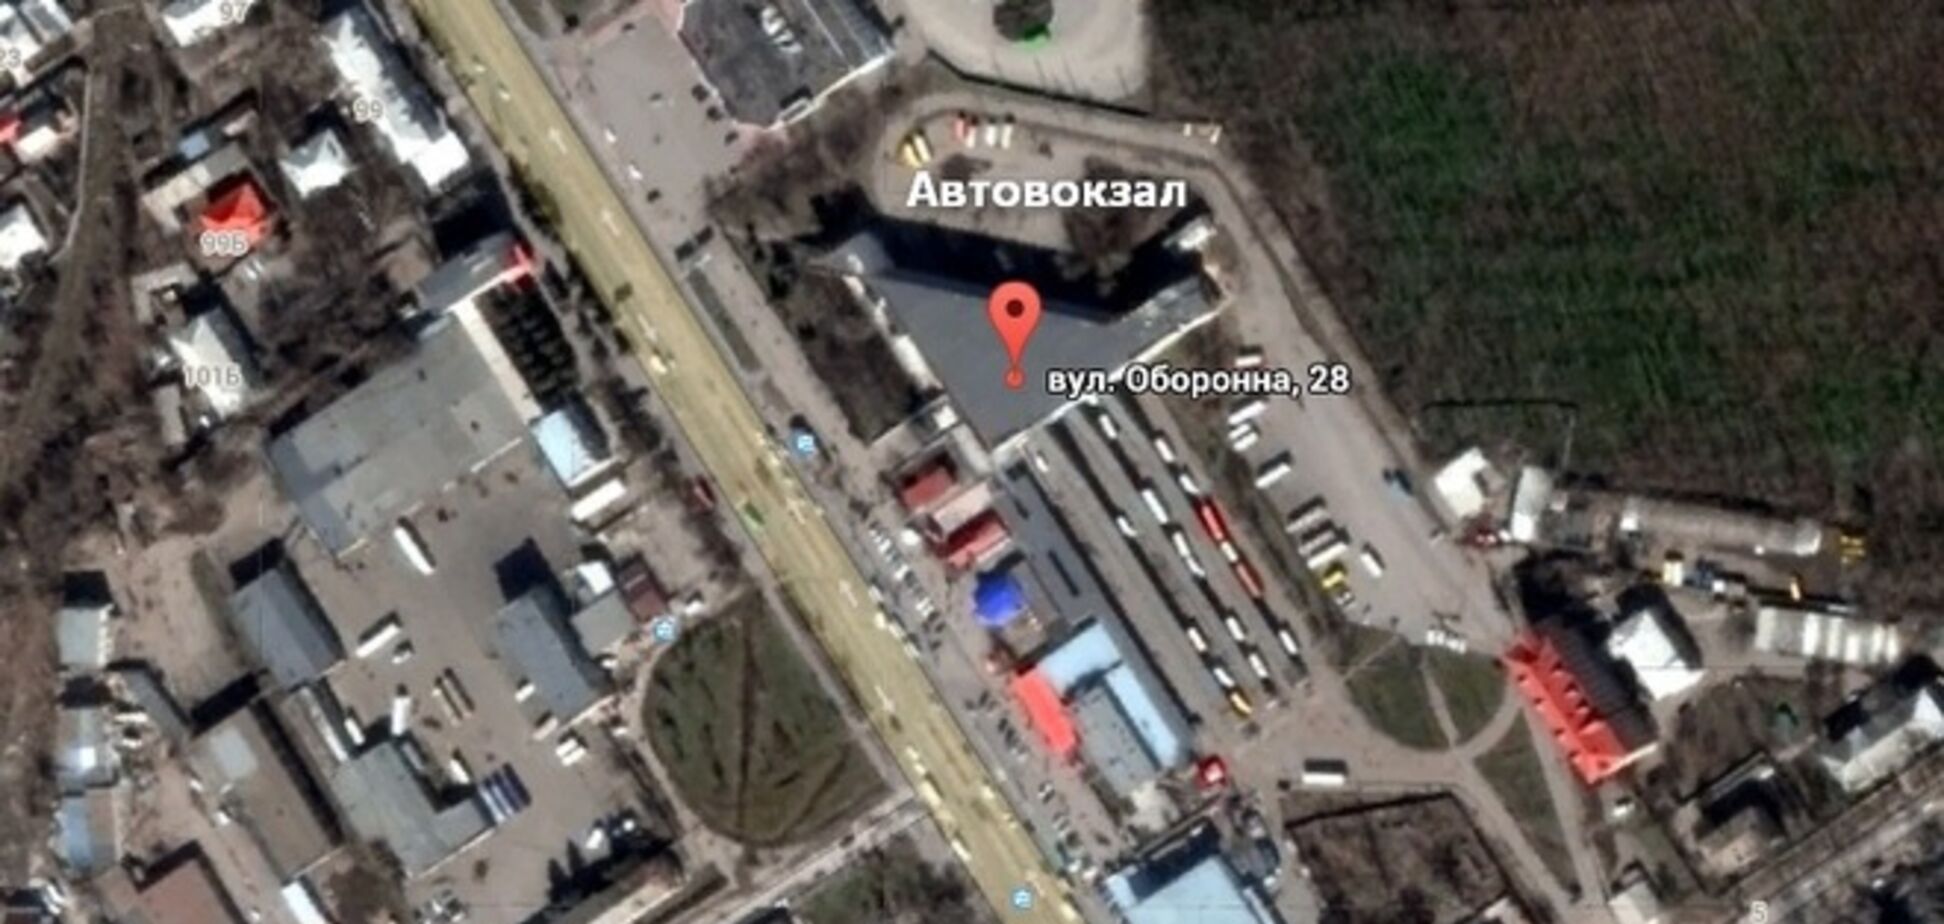 В Луганске обстреляли автовокзал - источник